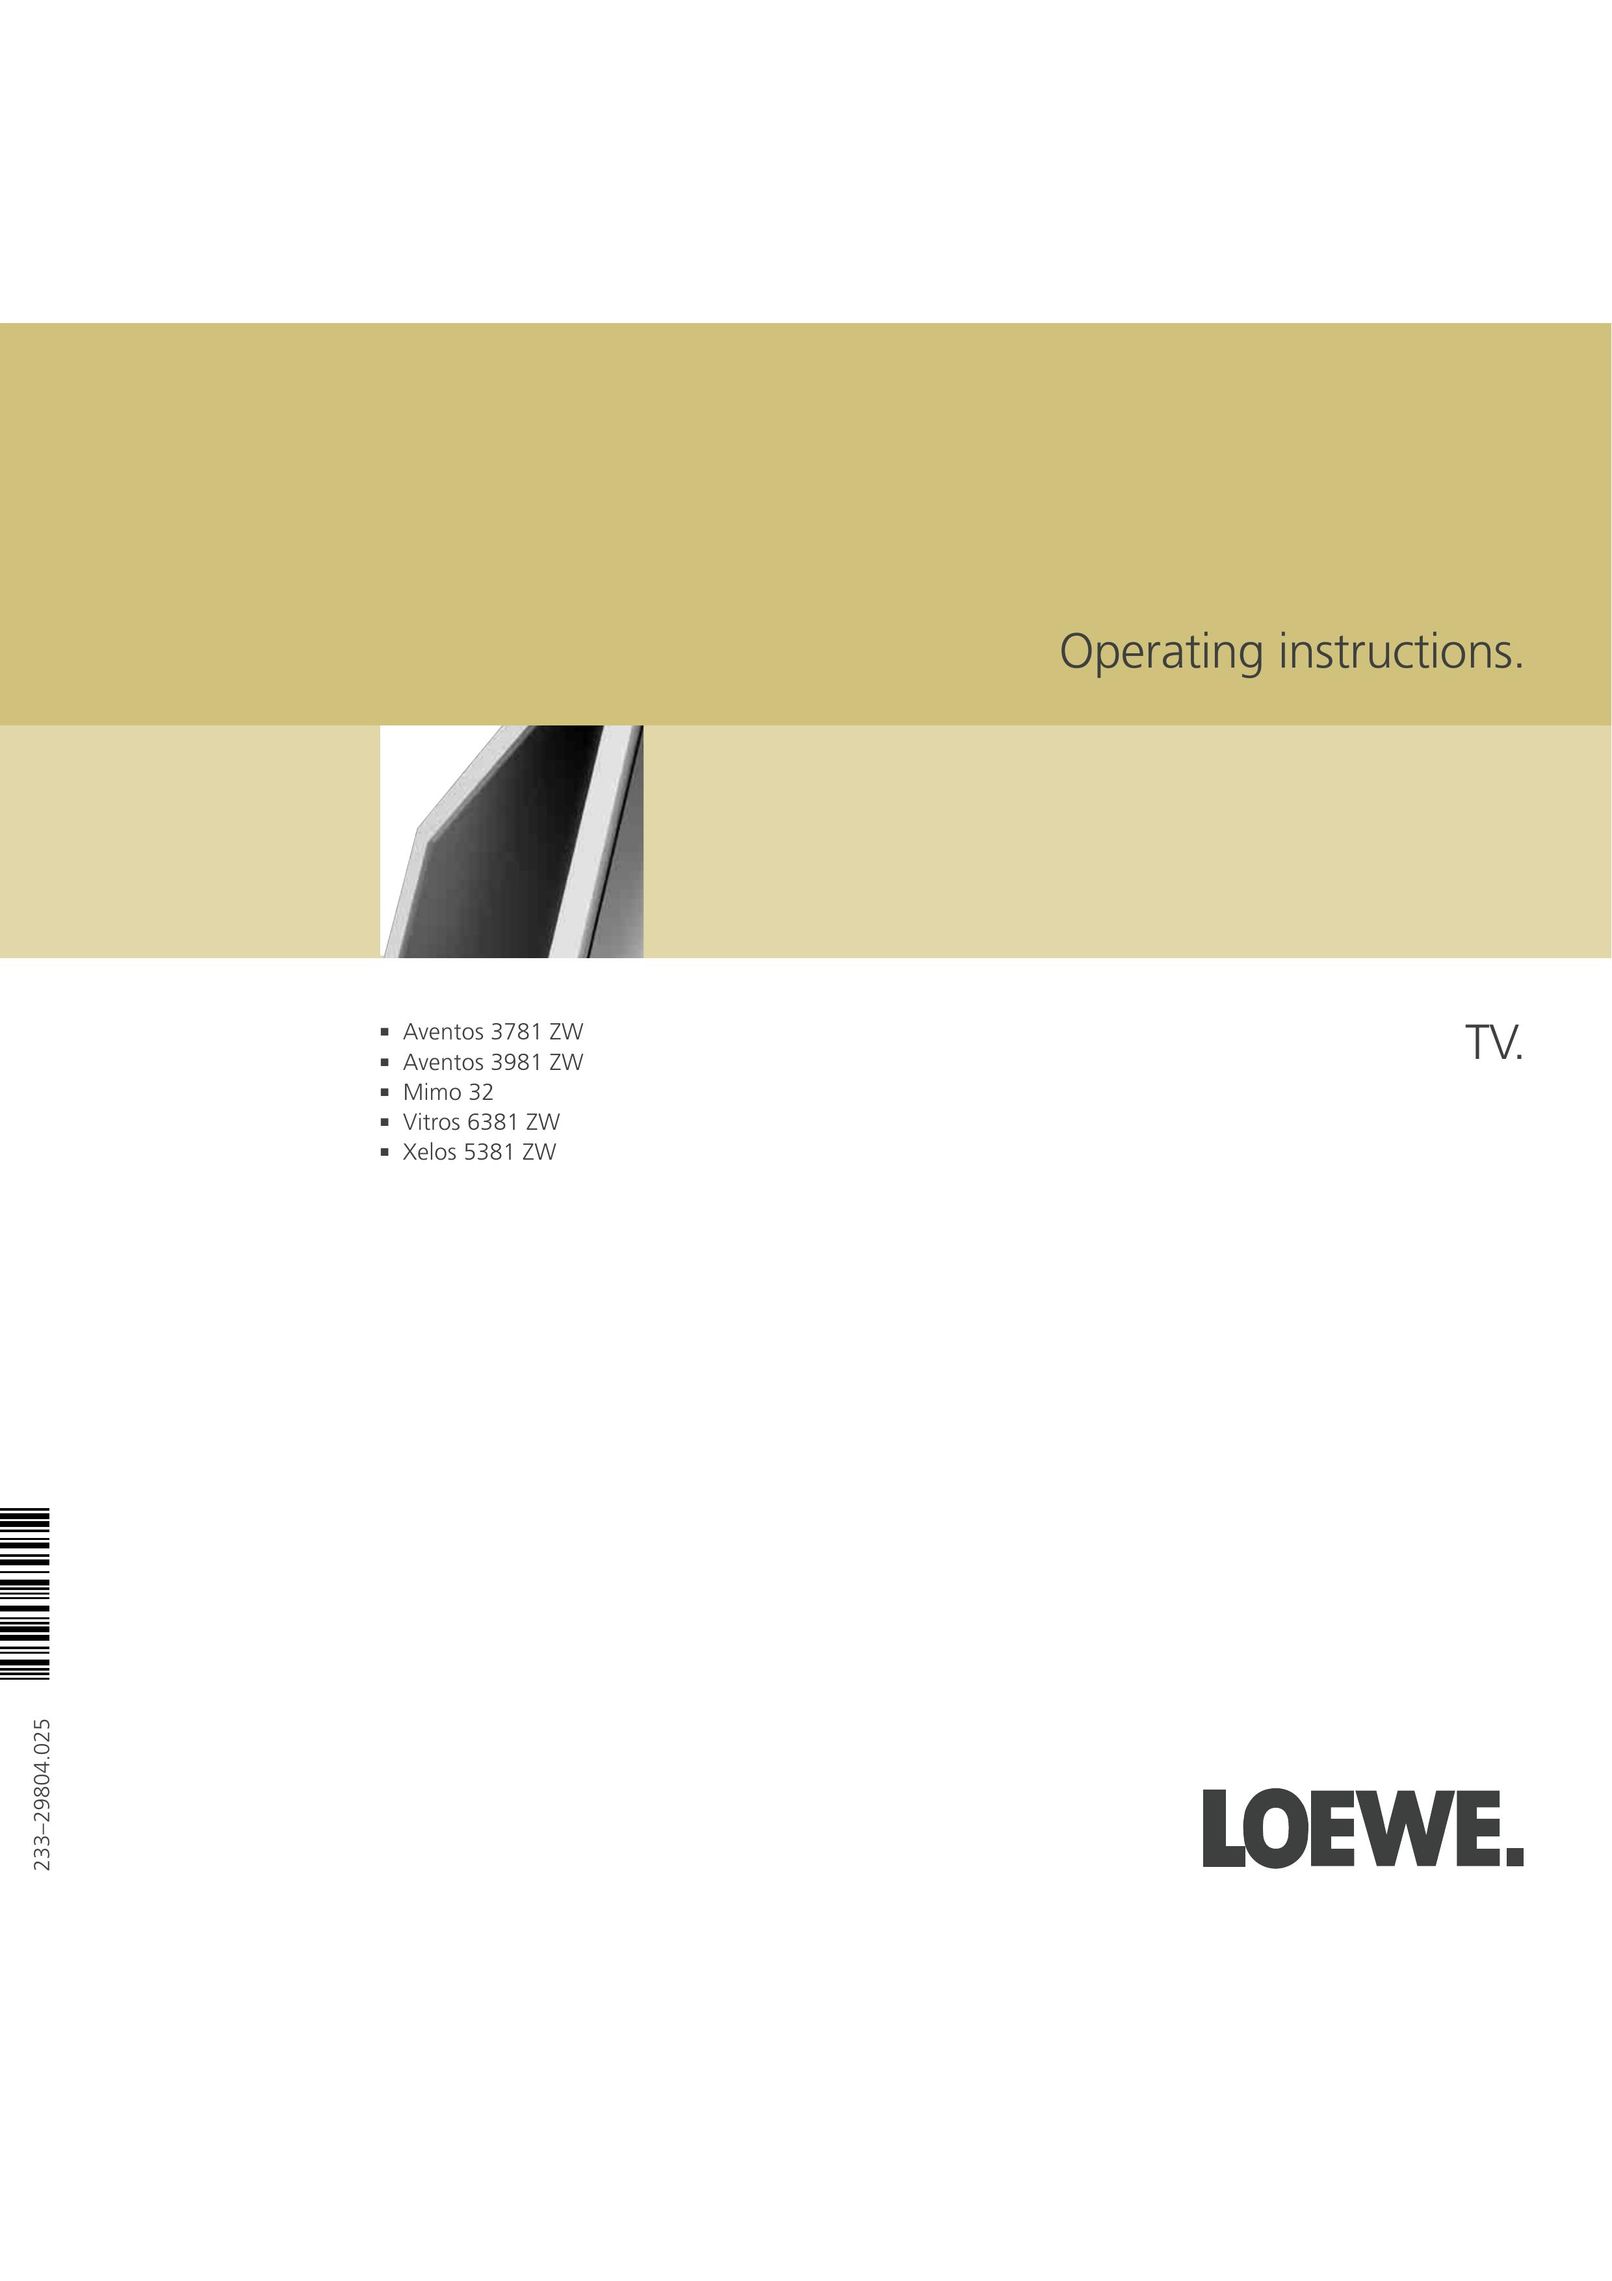 Loewe 3781 ZW, 3981 ZW, 32, 6381 ZW, 5381 ZW Flat Panel Television User Manual